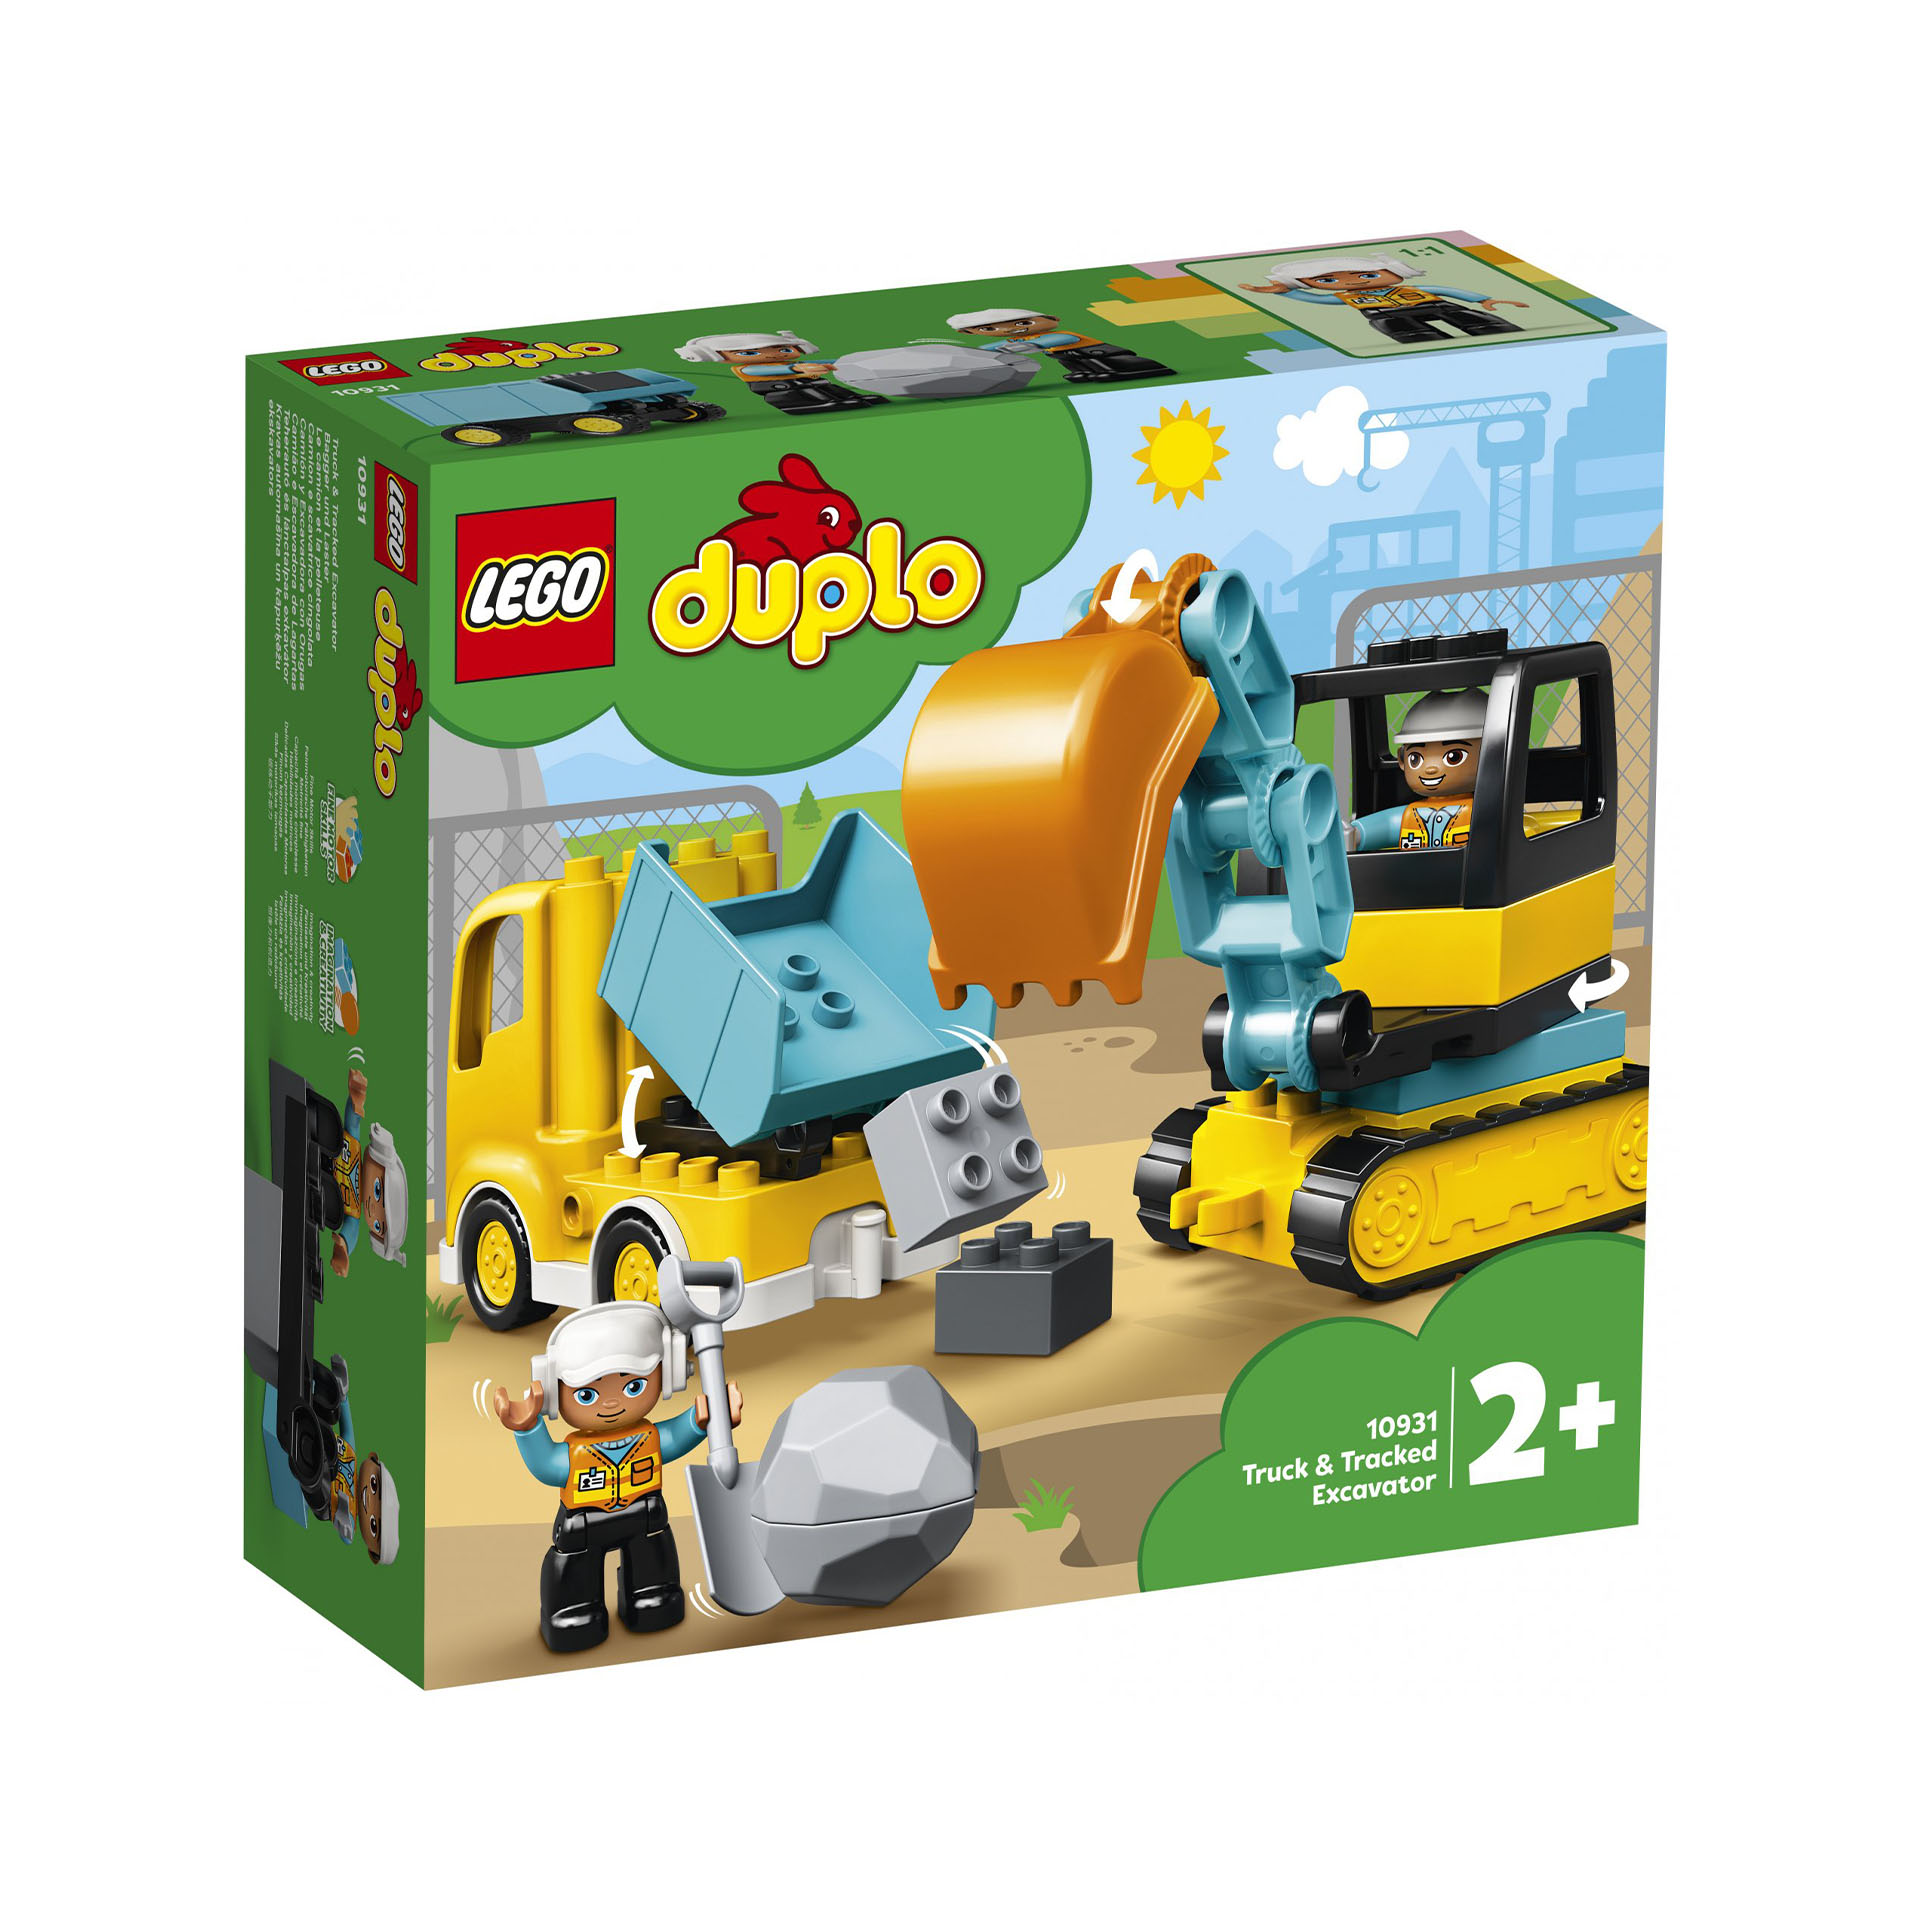 LEGO Duplo Camion e scavatore cingolato 10931, , large